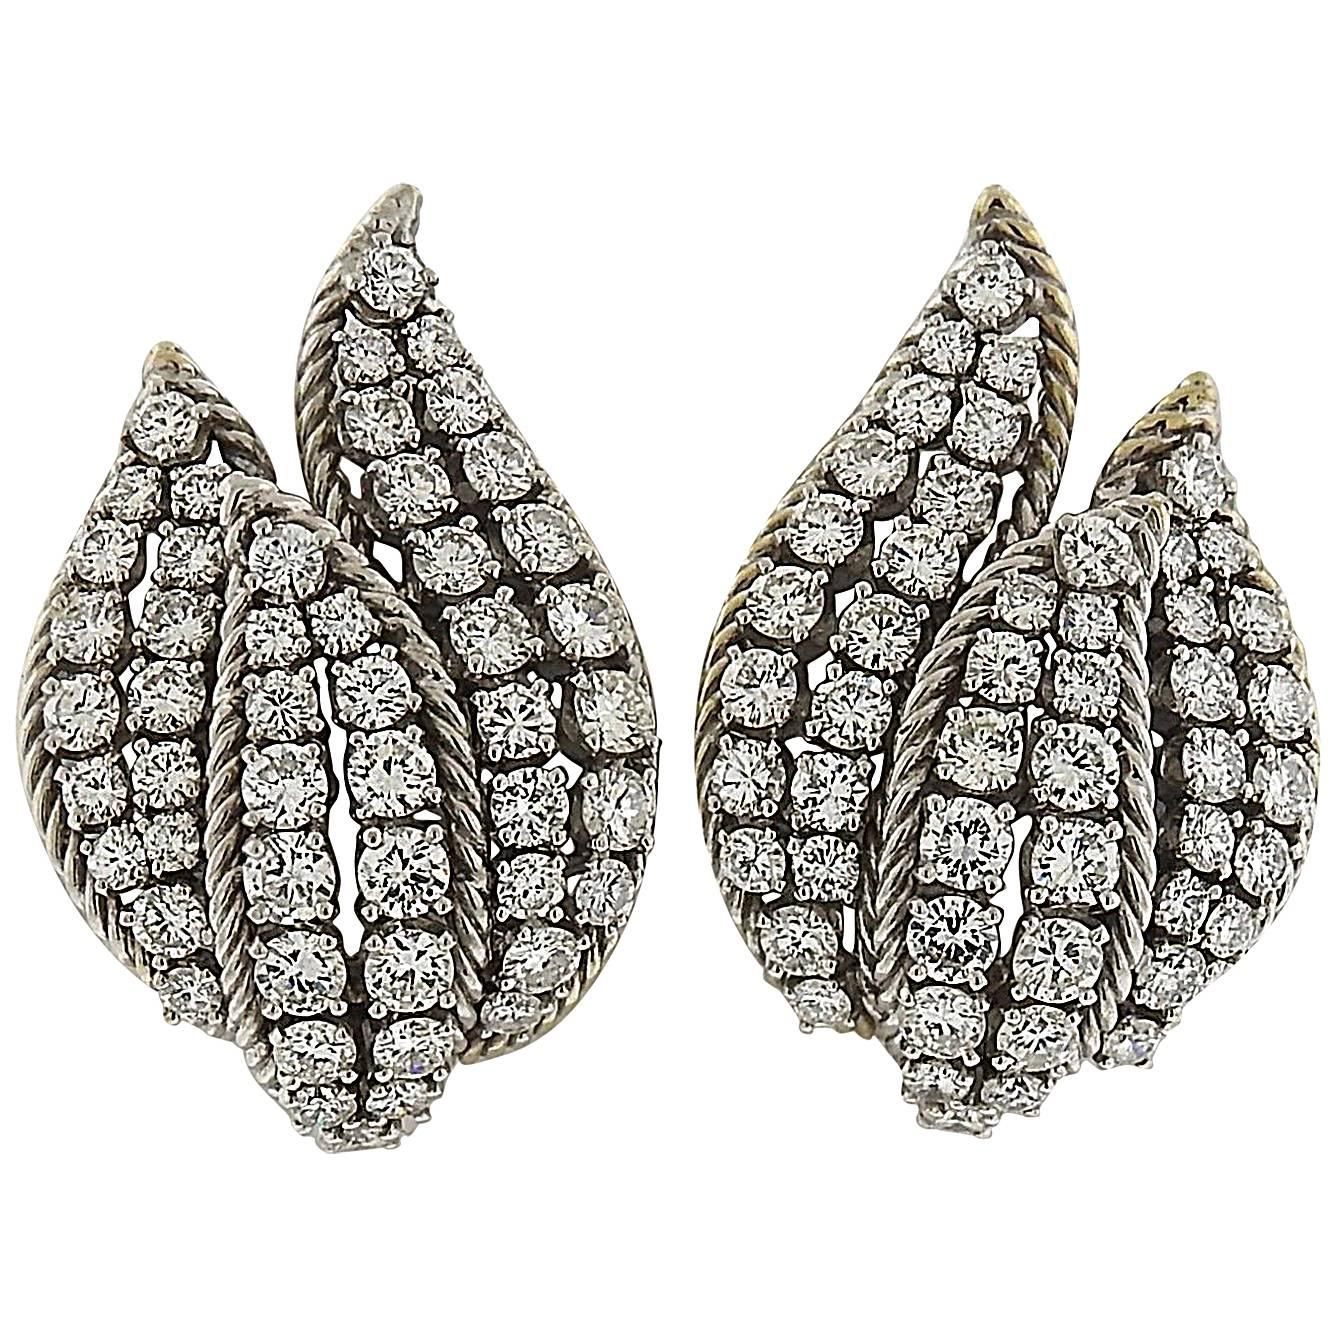 Impressive 1950s Diamond Gold Earrings